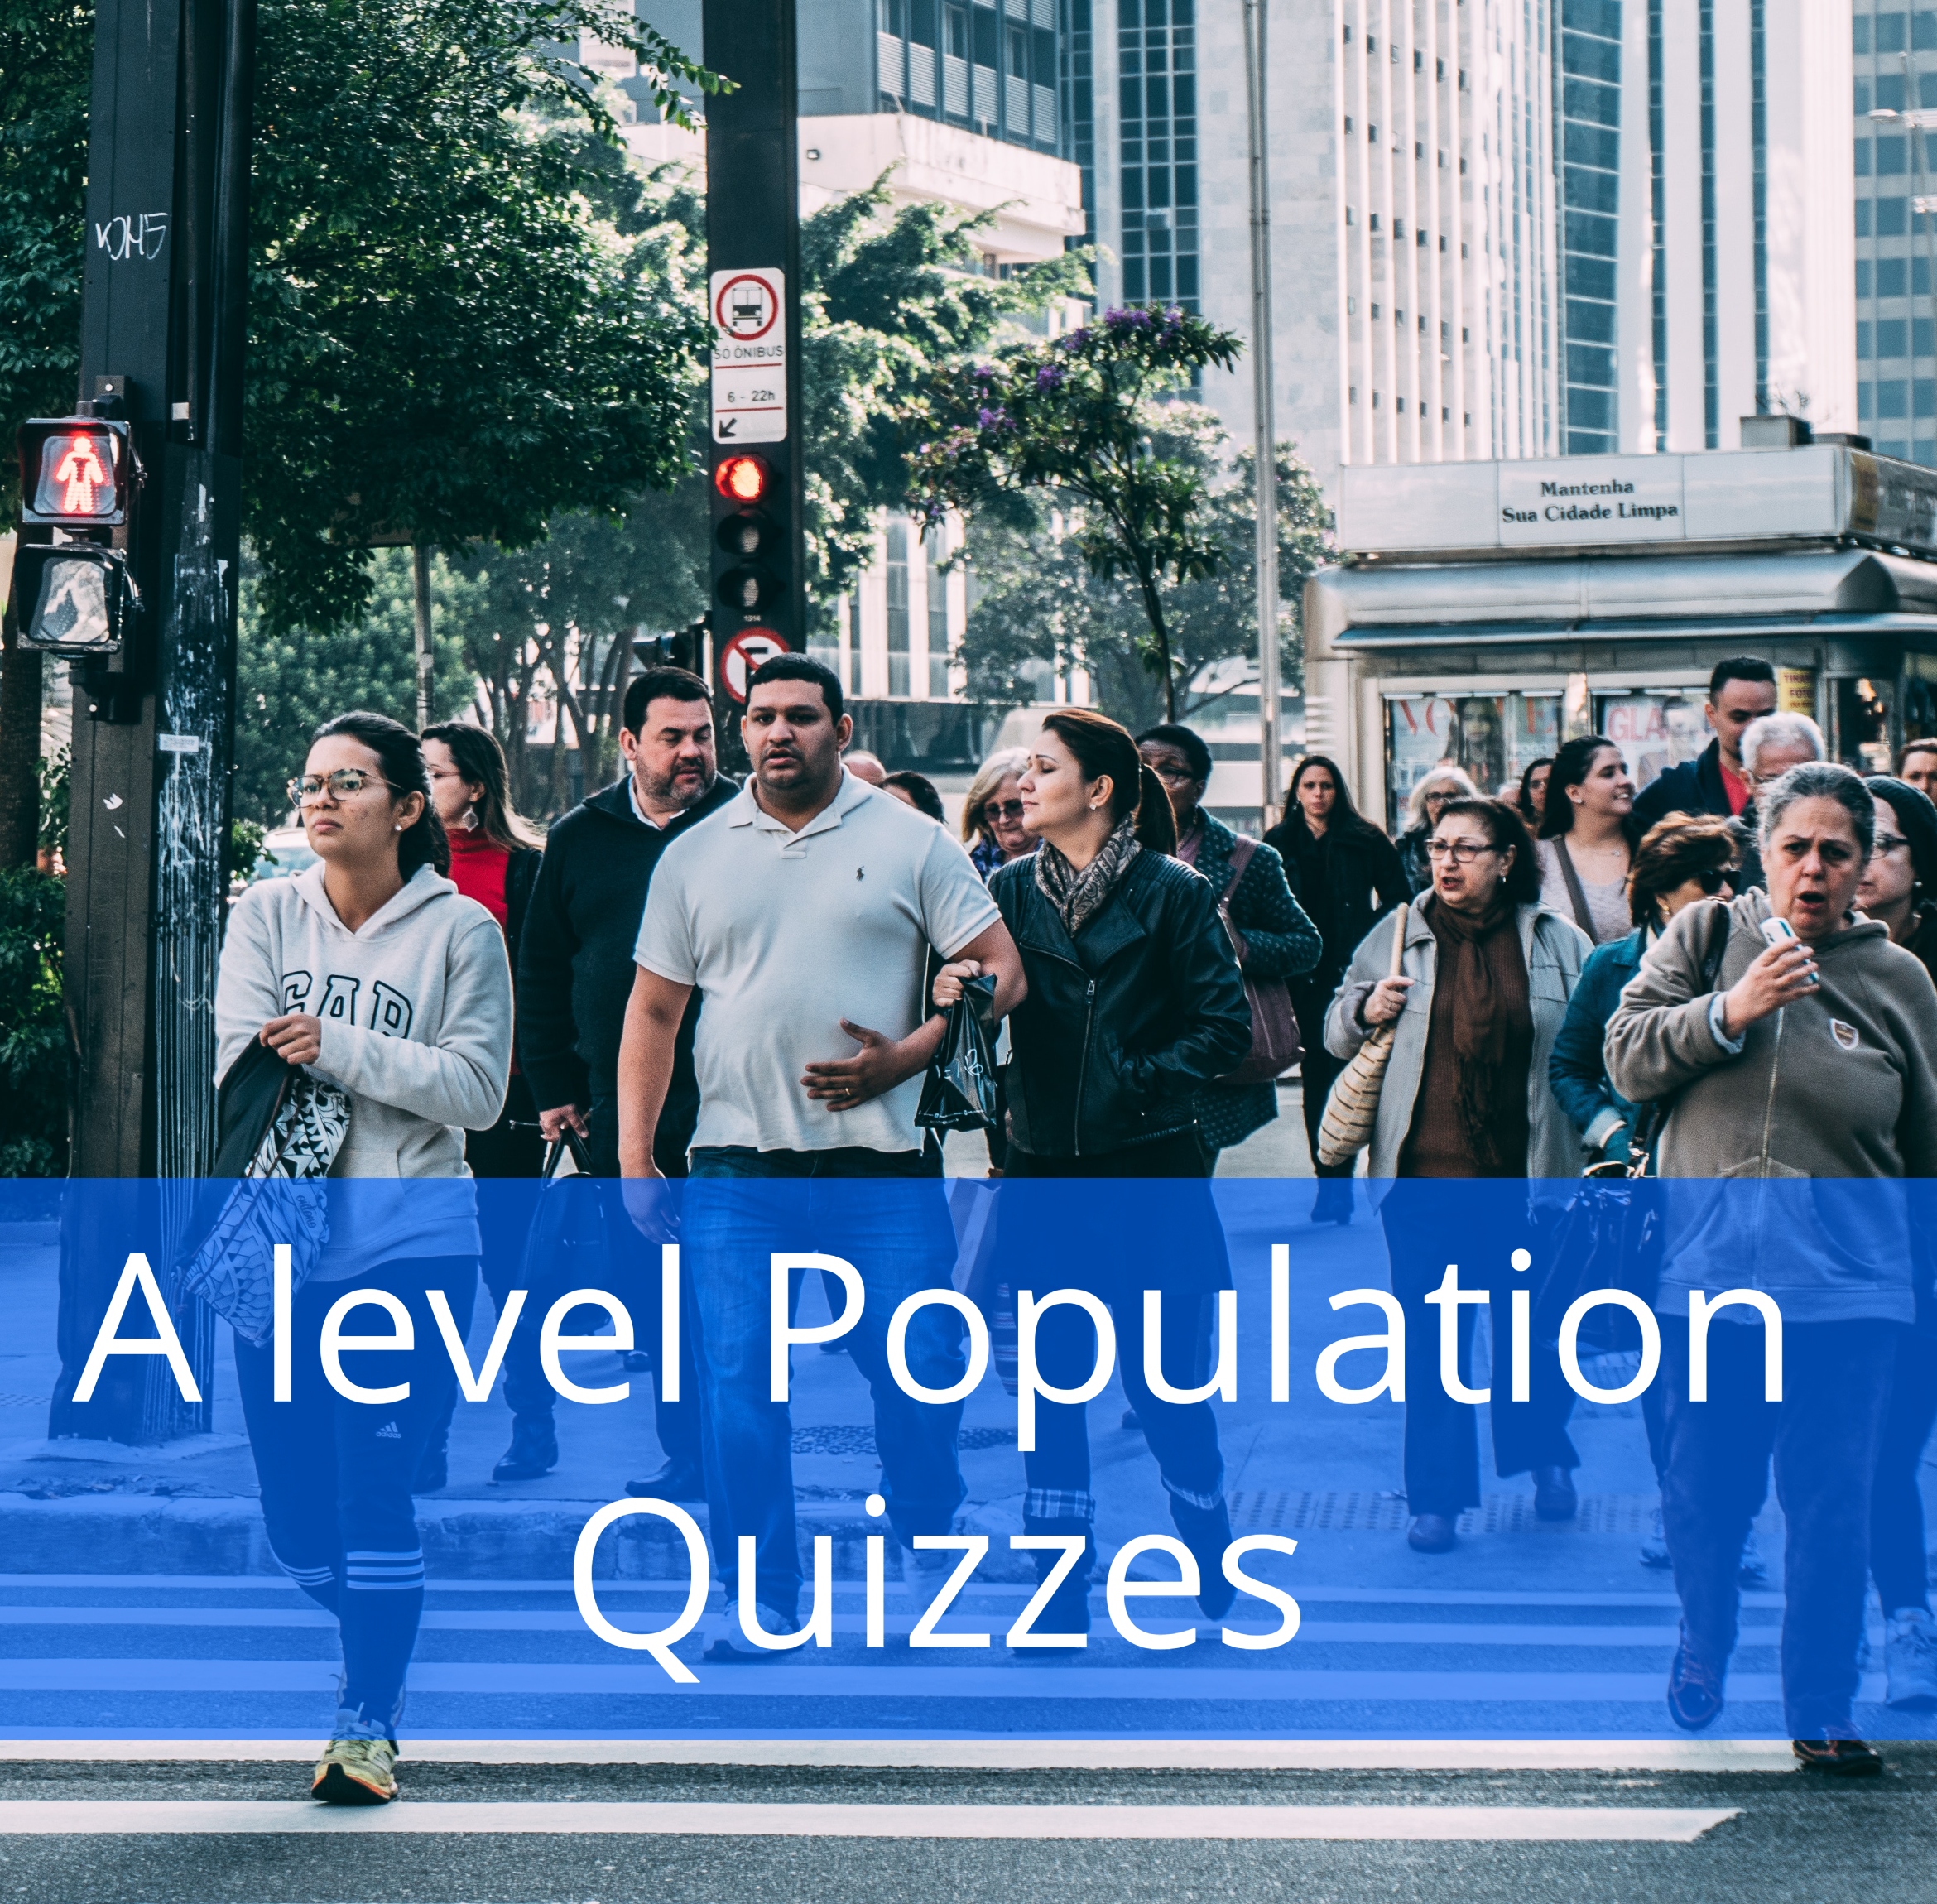 A level Population Quizzes